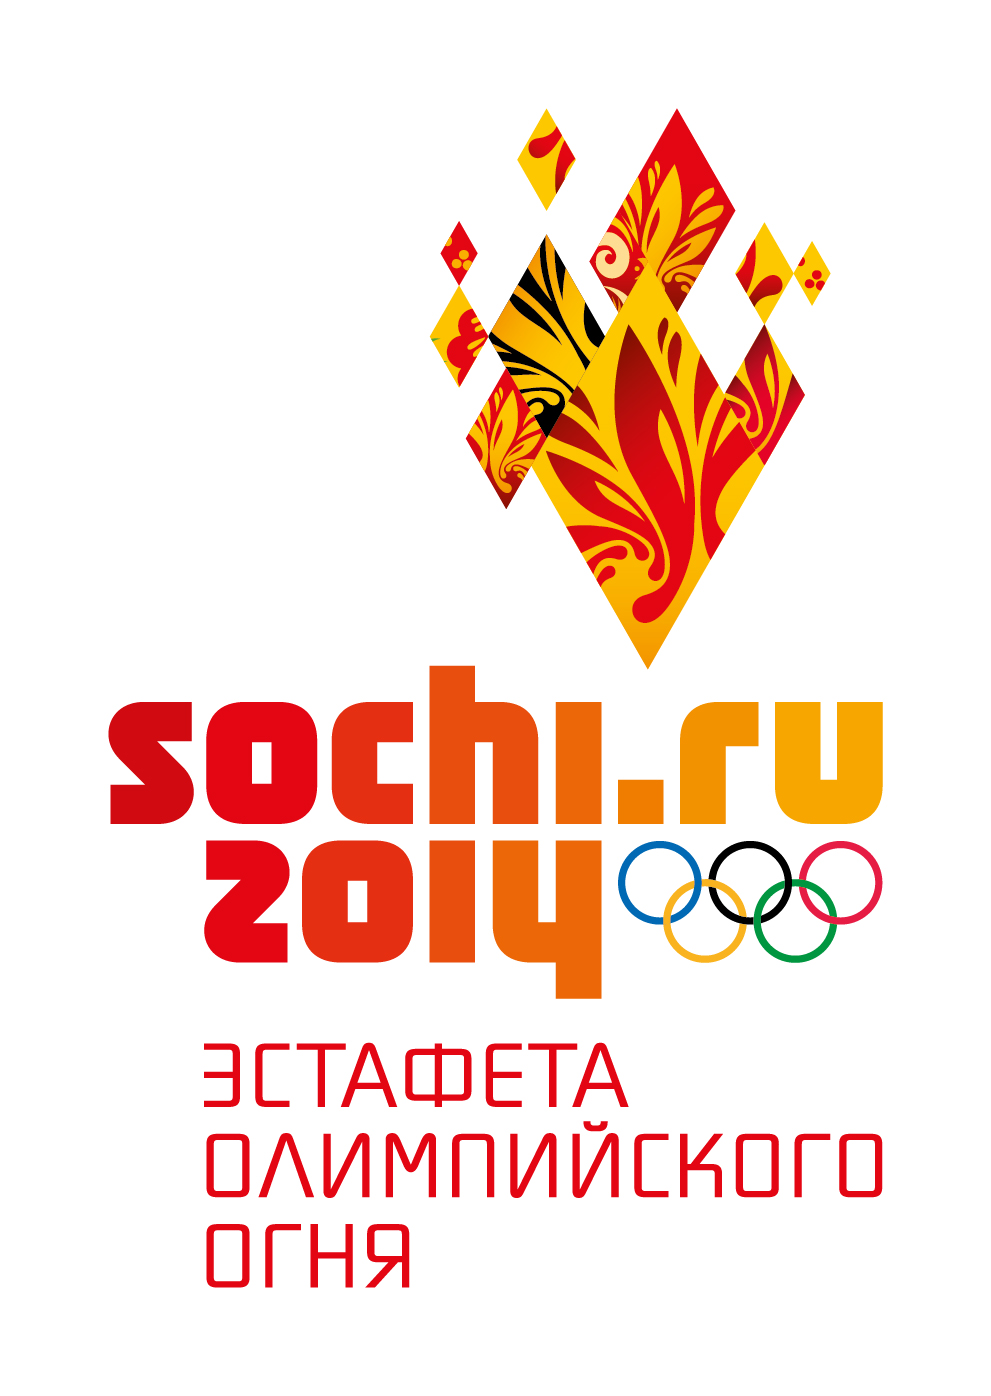 22 Января Олимпийский огонь прибудет в Ростов 